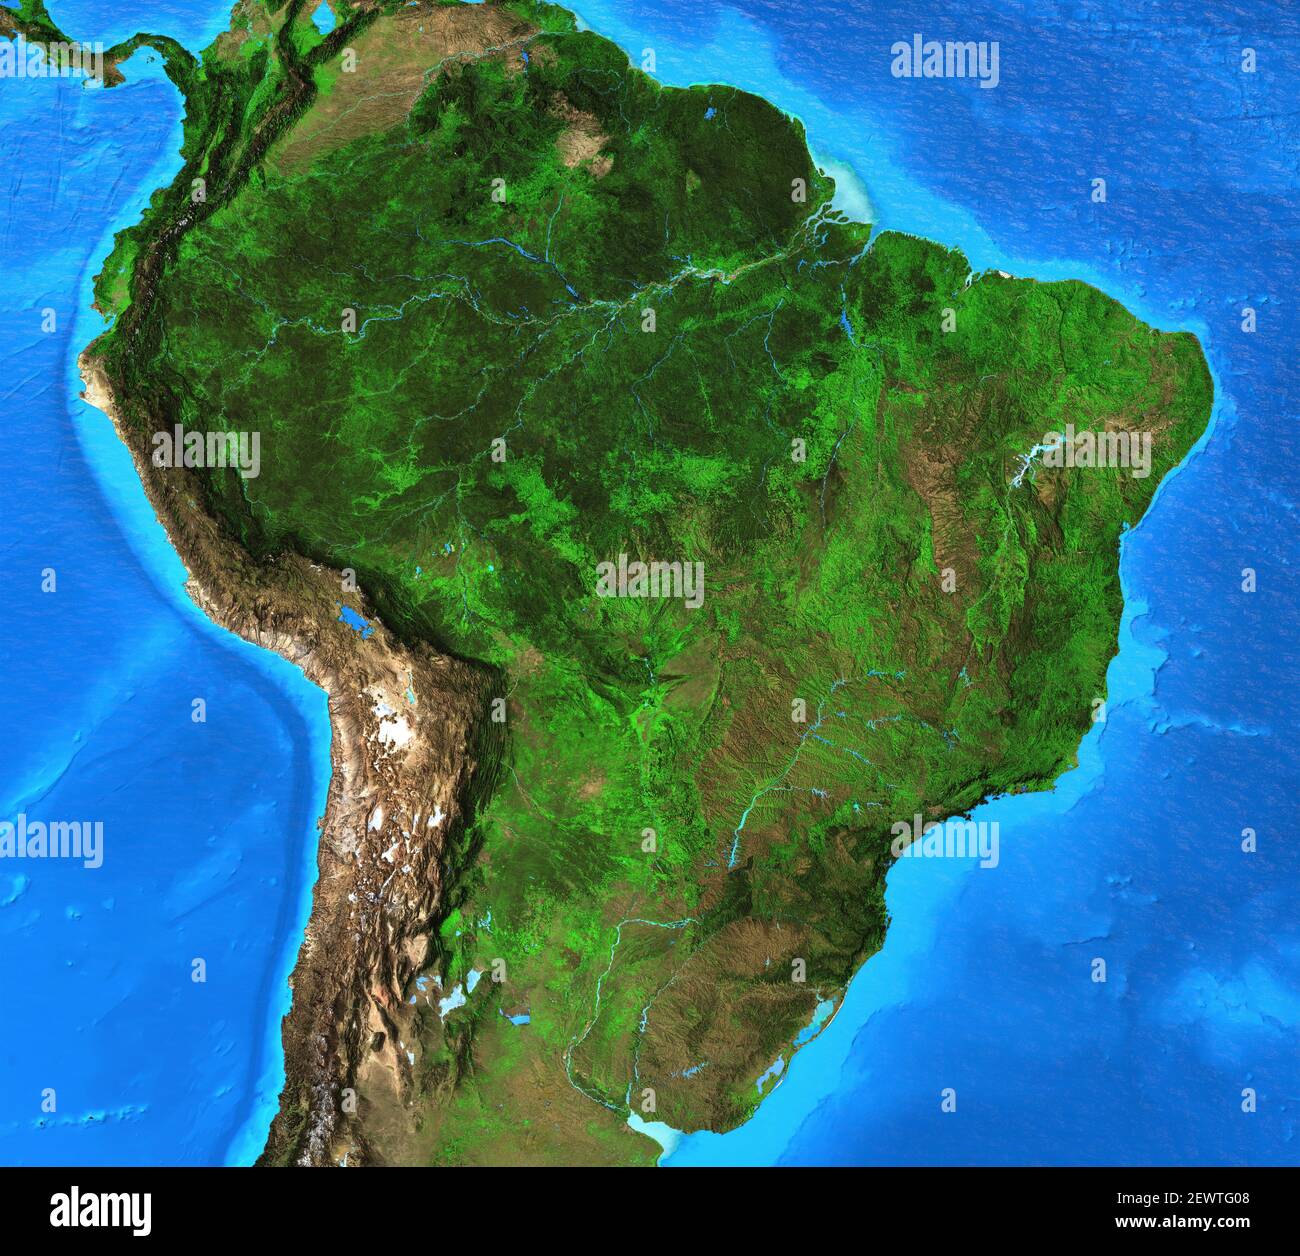 Physische Karte von Brasilien. Geographie und Topographie des Amazonas-Regenwaldes. Detaillierte flache Ansicht des Planeten Erde - Elemente von NASA Stockfoto